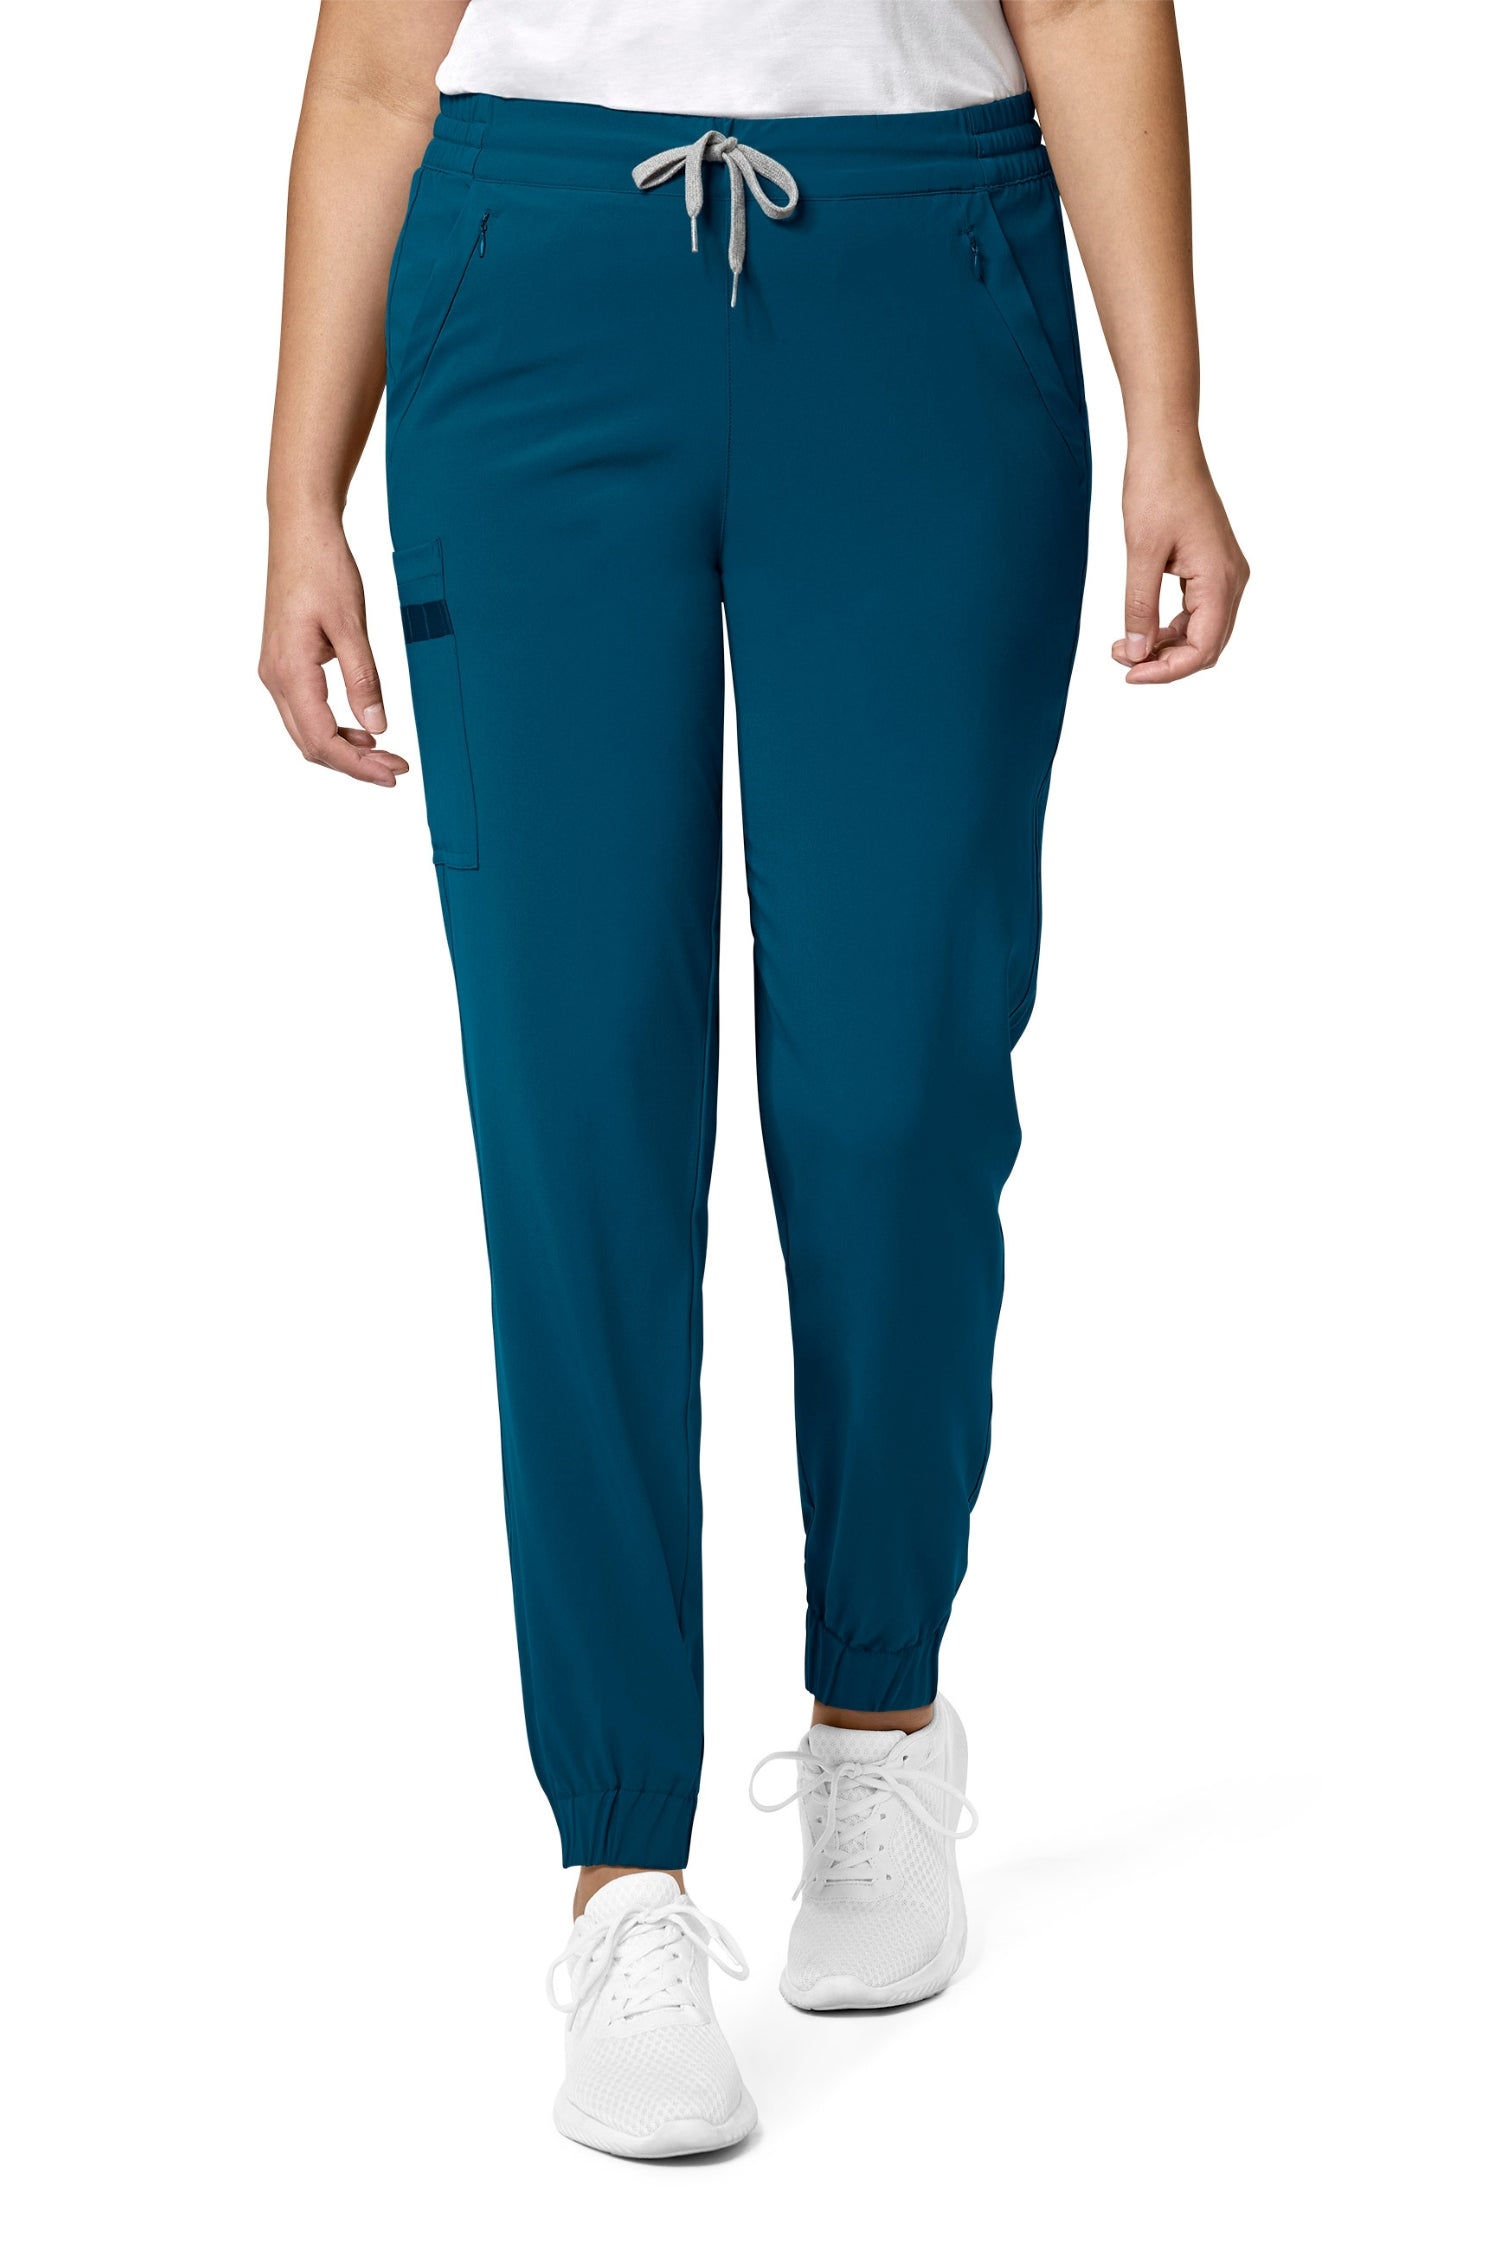 Le pantalon médical en polyester spandex avec poches à fermeture, tenue médicale femme, bleu turquoise